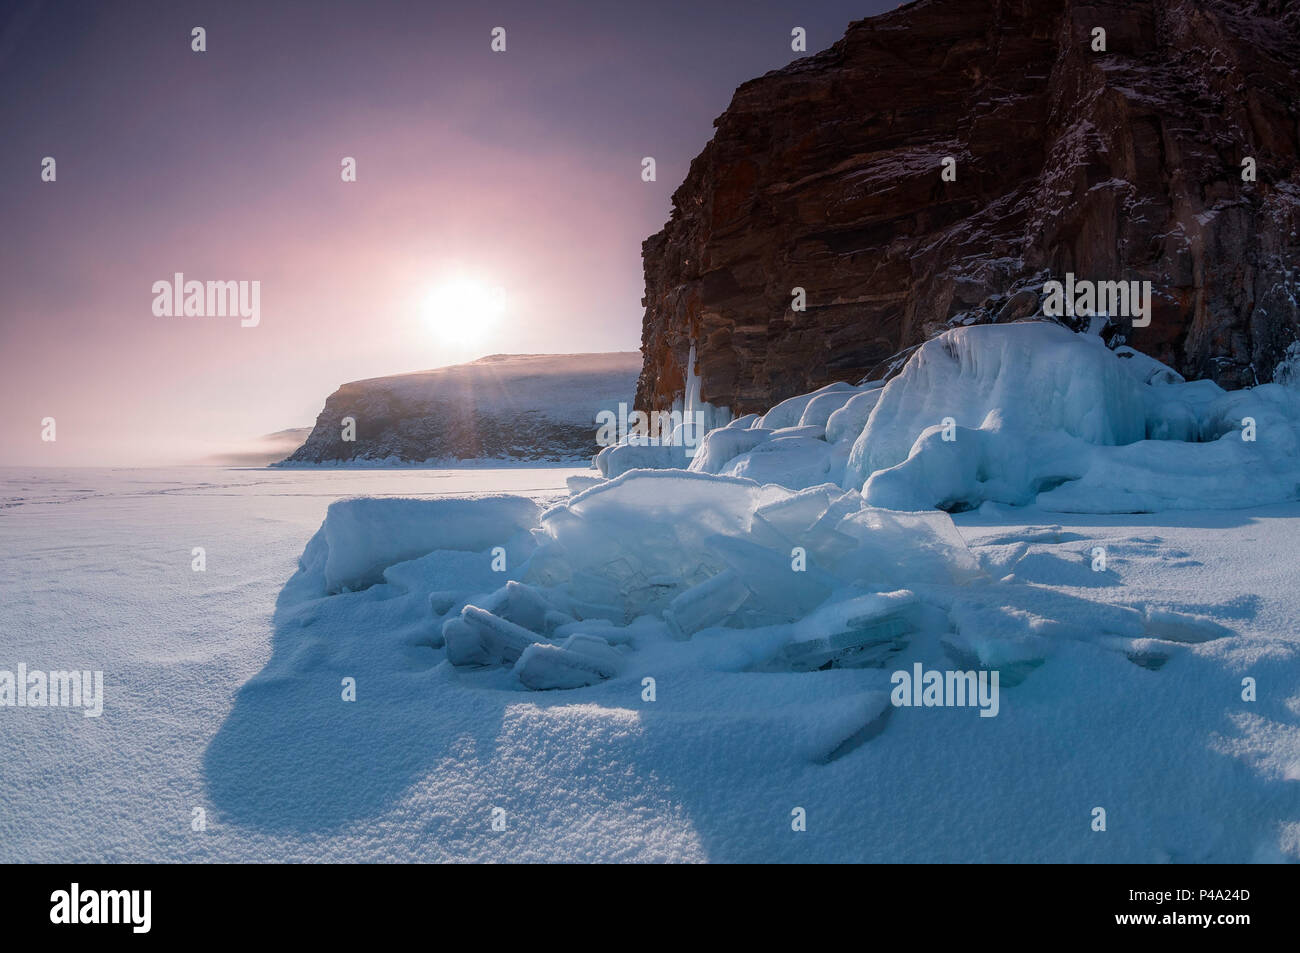 Los bloques de hielo en el amanecer en el lago Baikal, región de Irkutsk, Siberia, Rusia Foto de stock